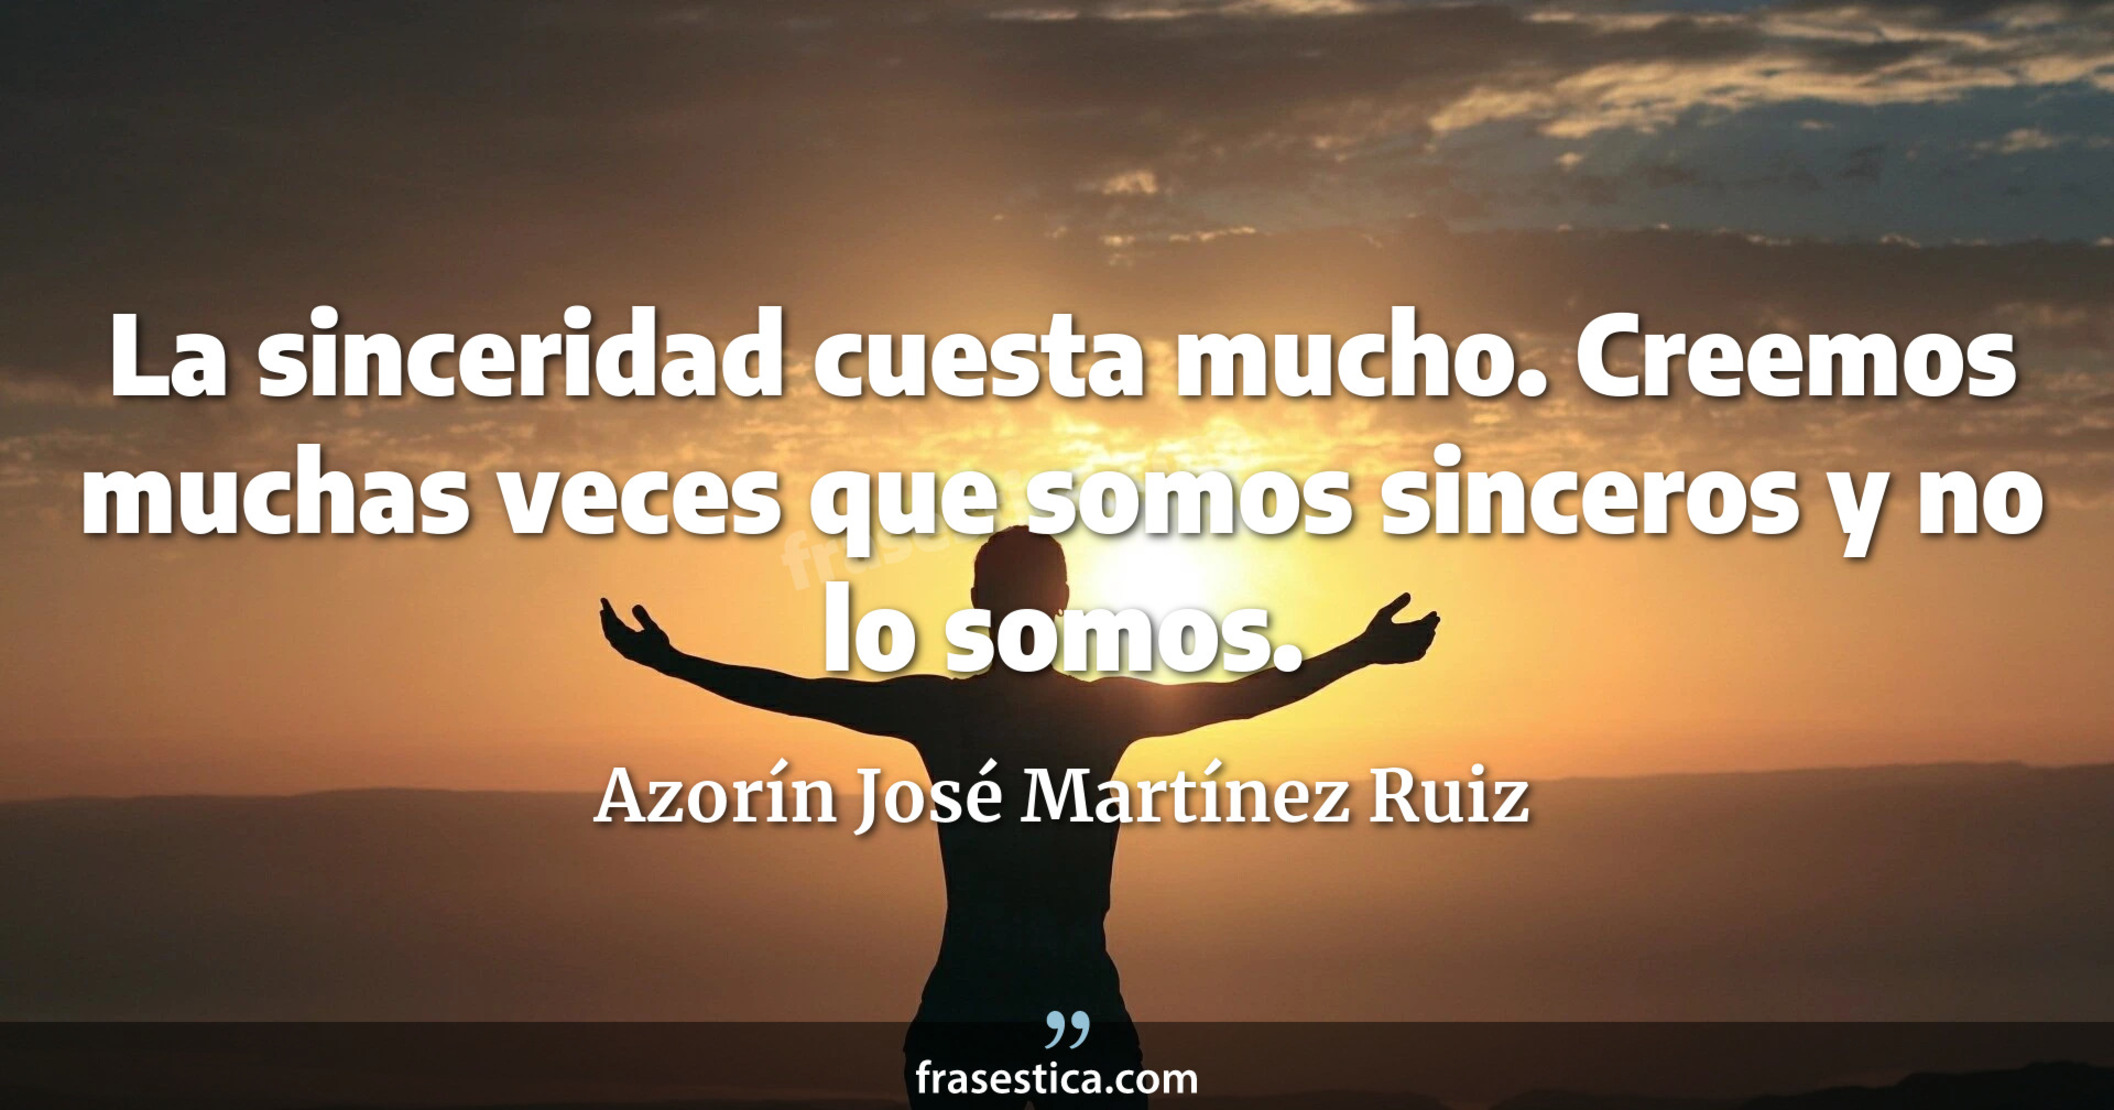 La sinceridad cuesta mucho. Creemos muchas veces que somos sinceros y no lo somos. - Azorín José Martínez Ruiz